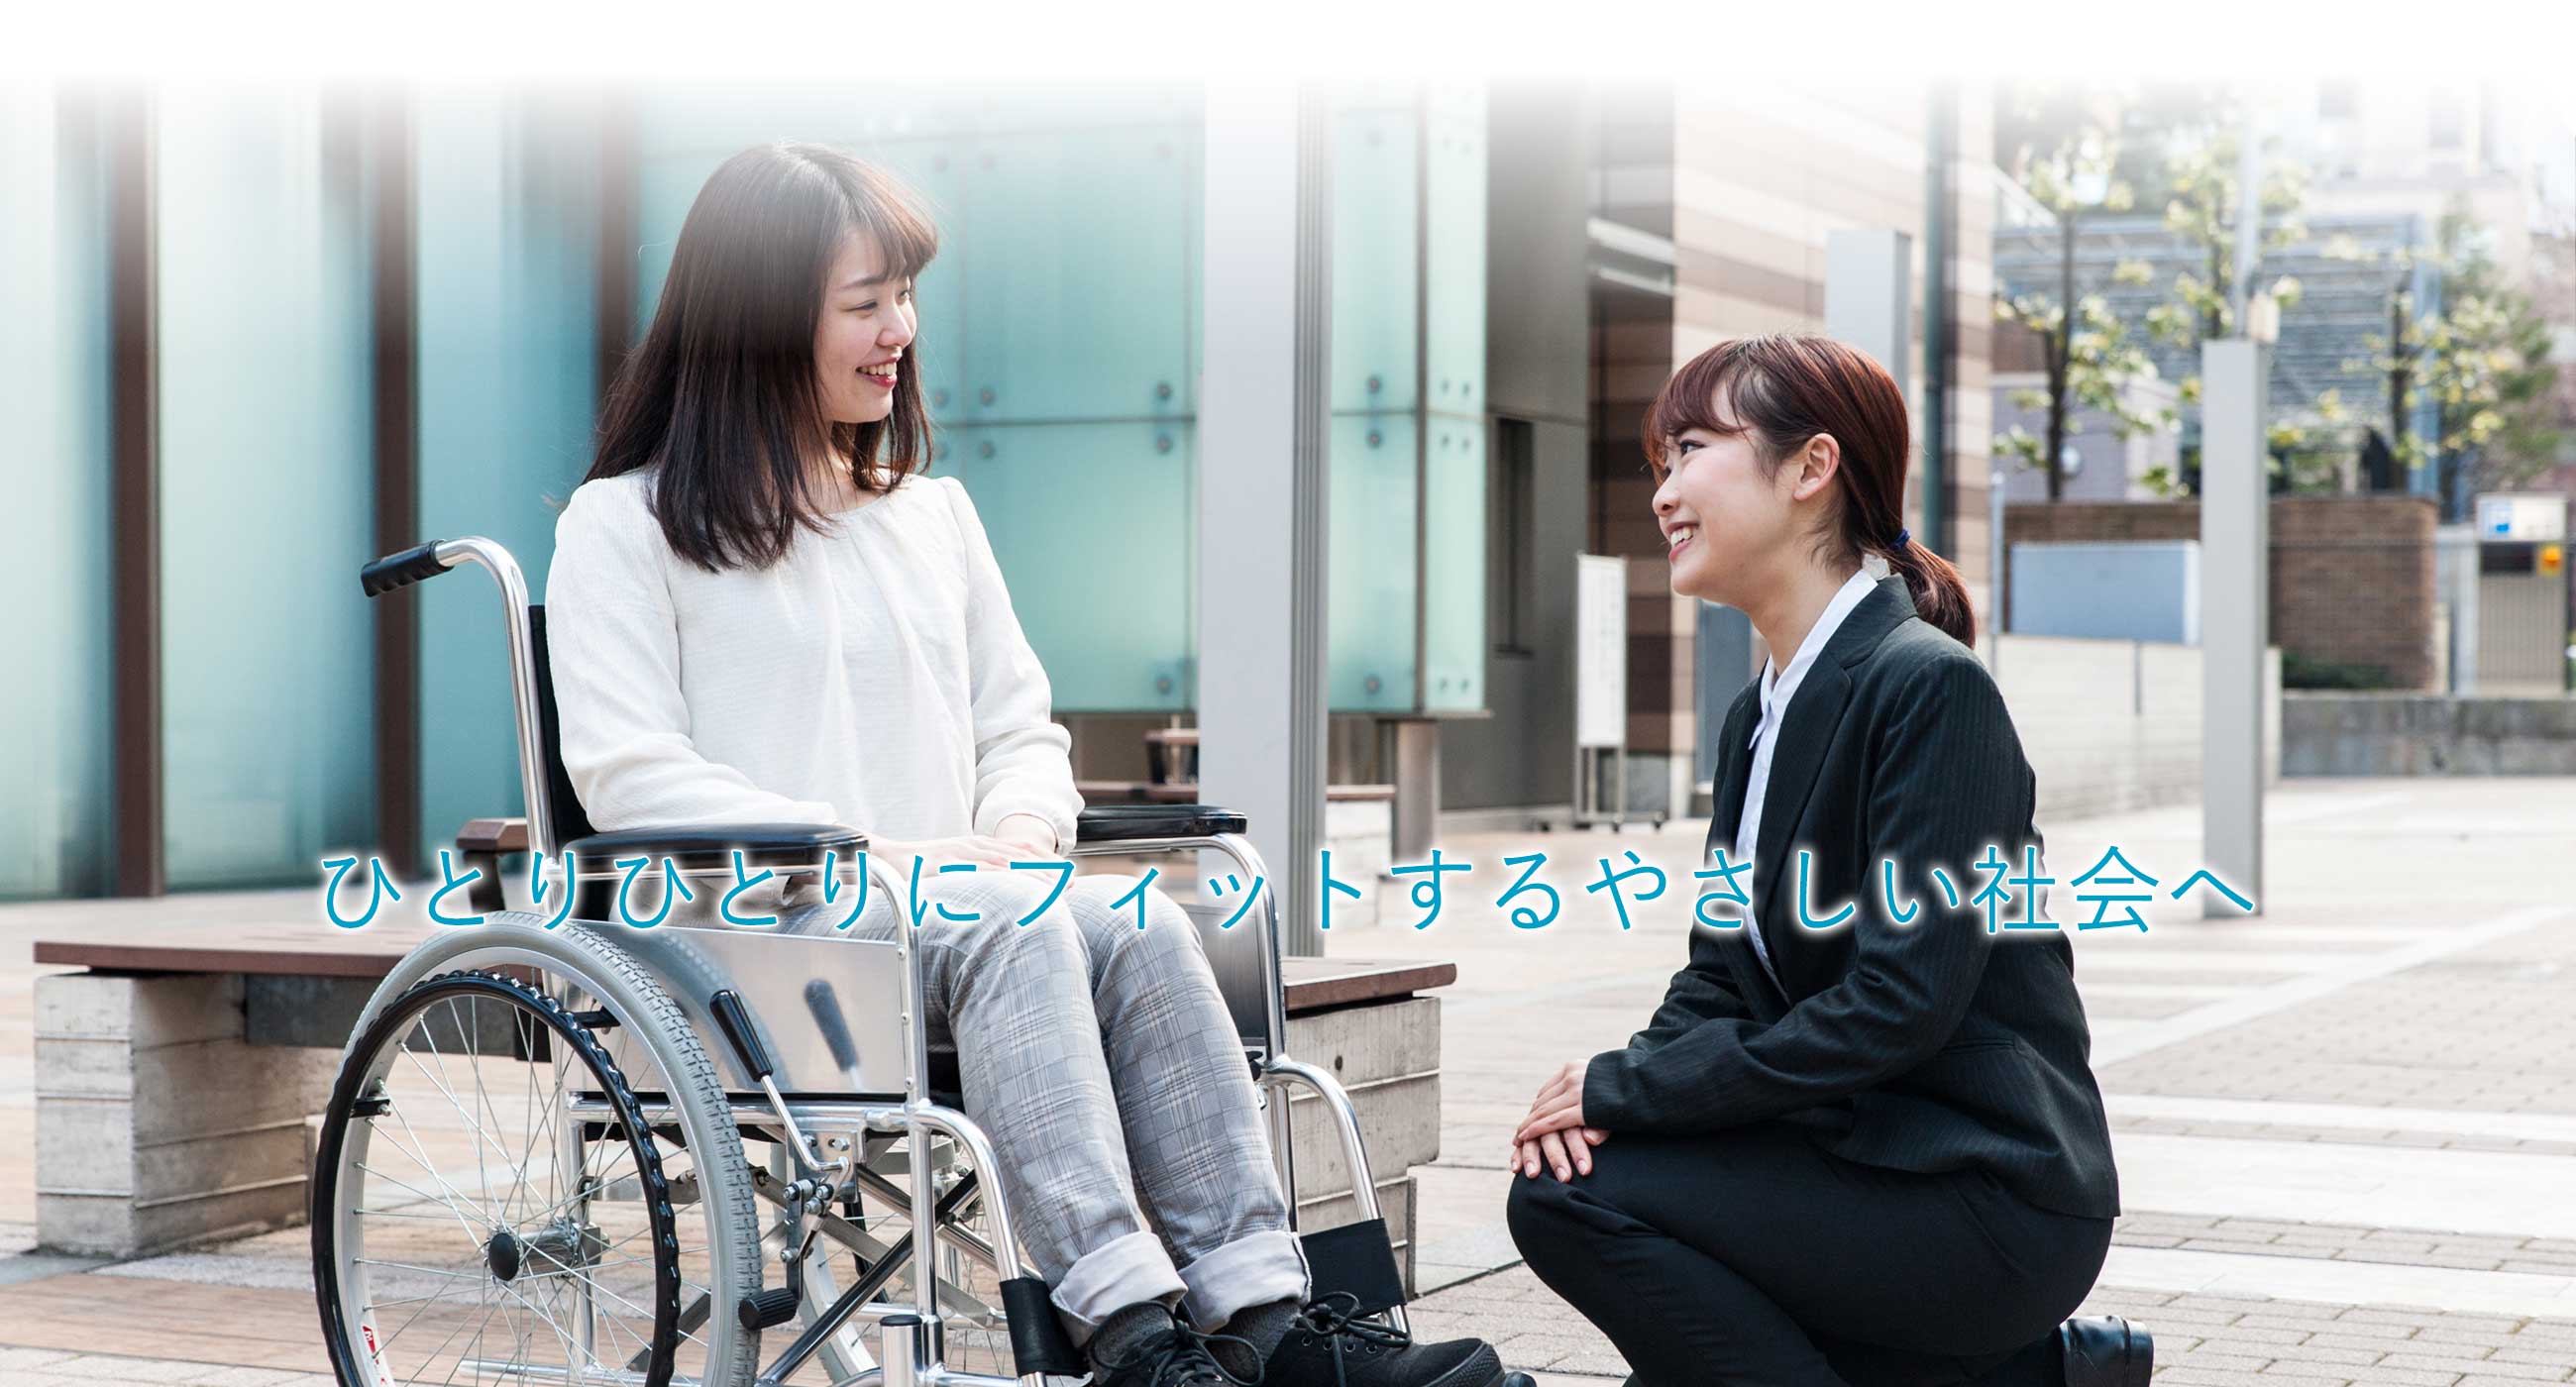 成田国際空港で、海外の障害者アスリート受け入れのための研修を実施共生社会実現に向けて、スムーズな入国案内を支援のサブ画像4